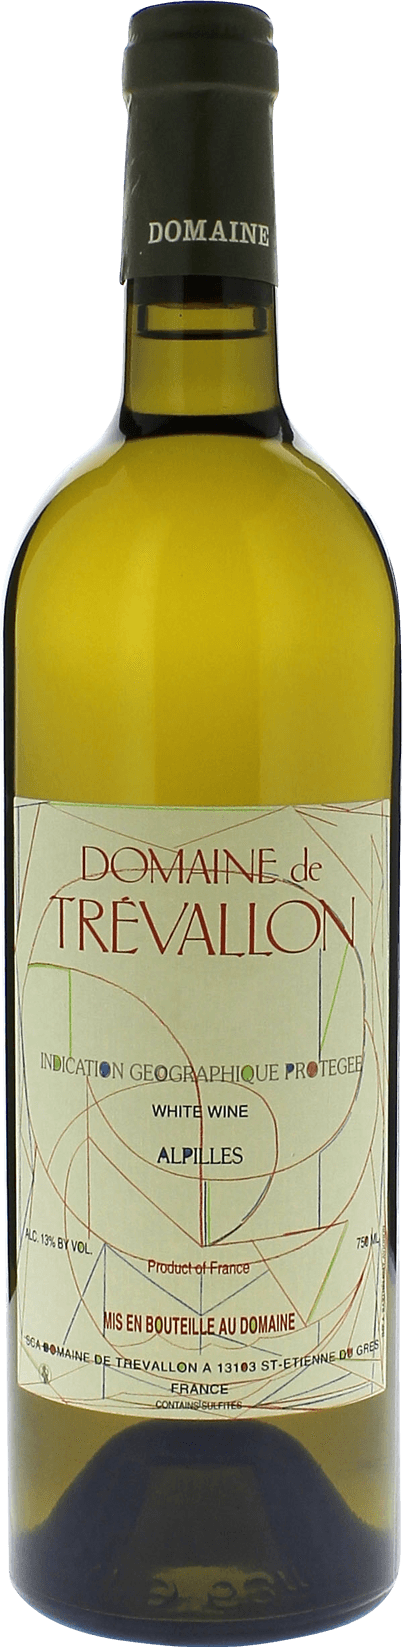 Domaine de trevallon blanc 2015  Vin de Pays, Provence